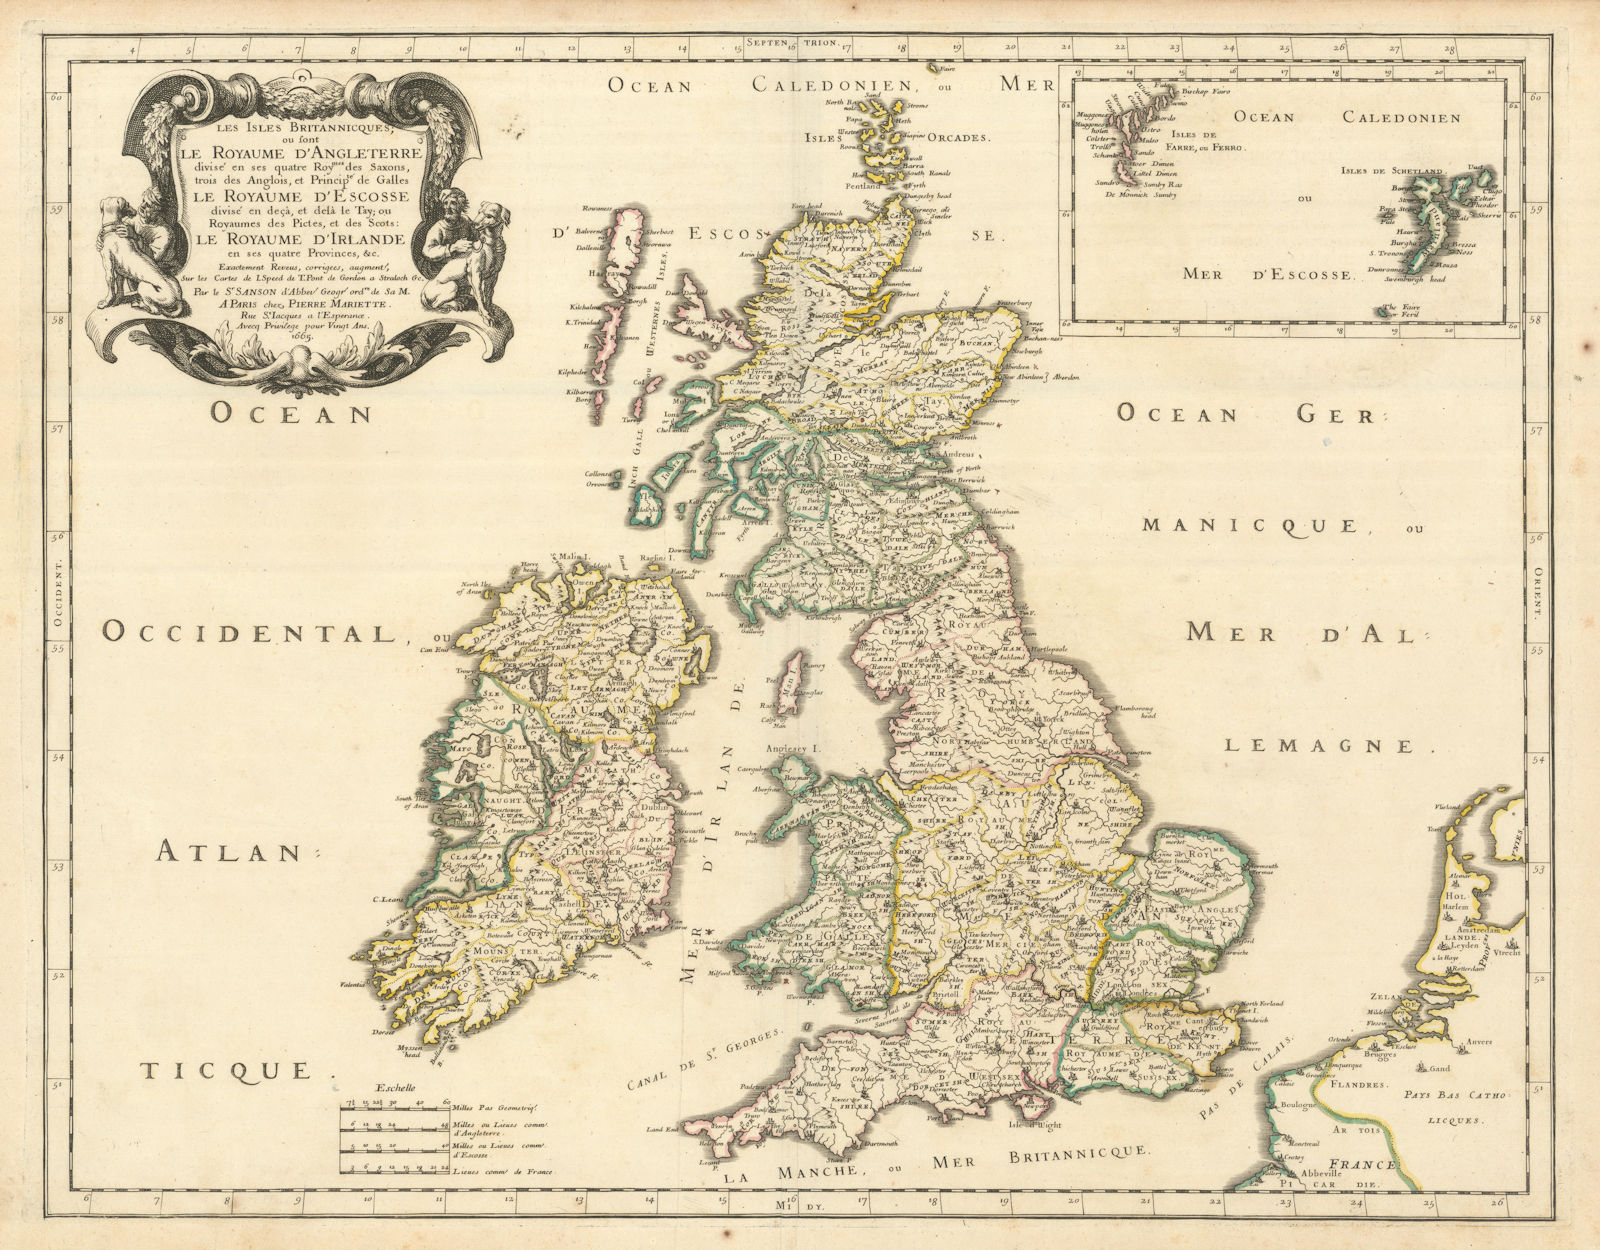 Les Iles Britannicques ou sont Le Royaume d'Angleterre divisé. SANSON 1665 map